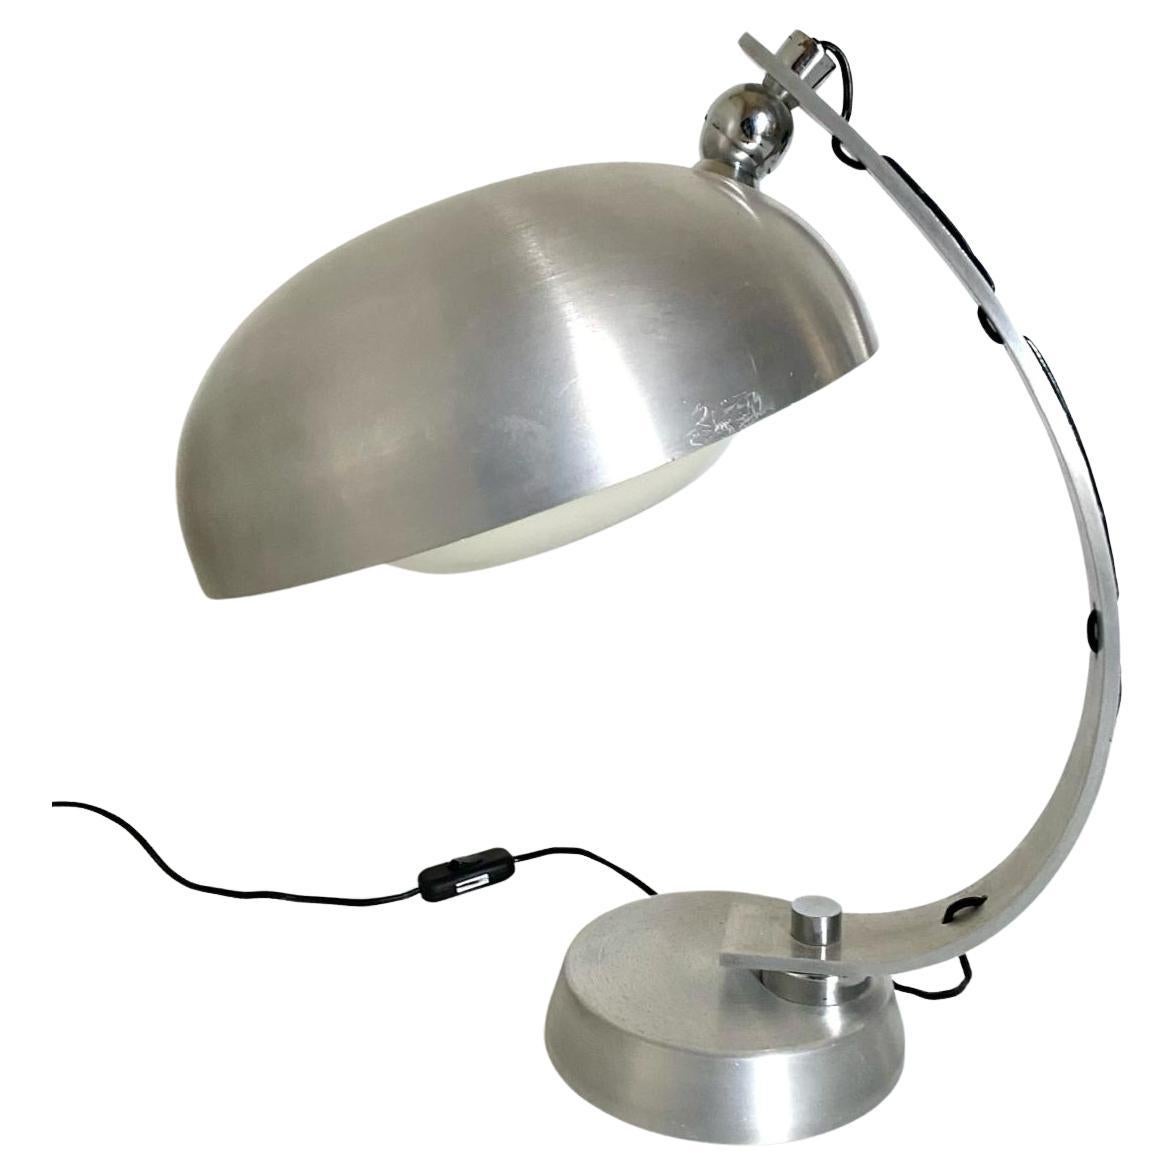 Vintage-Tischlampe im Industriestil der 1970er Jahre. Entworfen von Angelo Lelli für Arredoluce in den 1970er Jahren. Aluminiumstruktur mit flexiblem Lampenschirm. Die Leuchte wurde neu verkabelt, während ihre Struktur verfeinert wurde. In wirklich